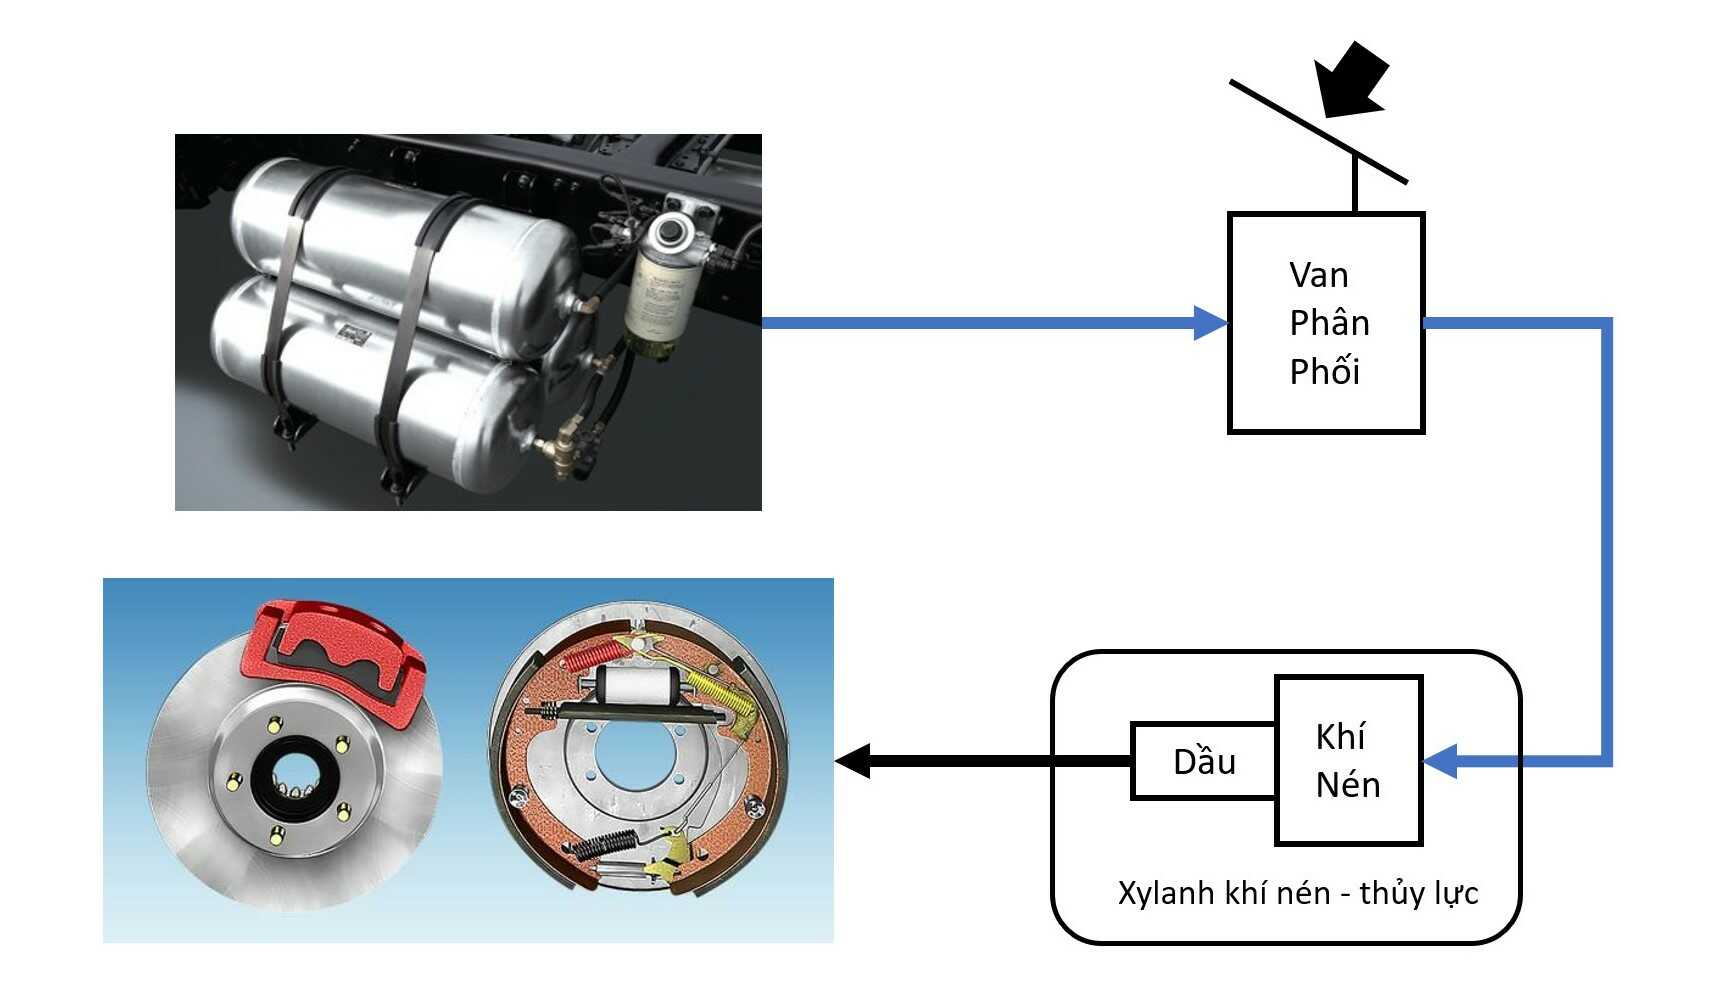 Tìm hiểu về hệ thống dẫn động điều khiển phanh bằng khí nén kết hợp thủy lực trên ô tô